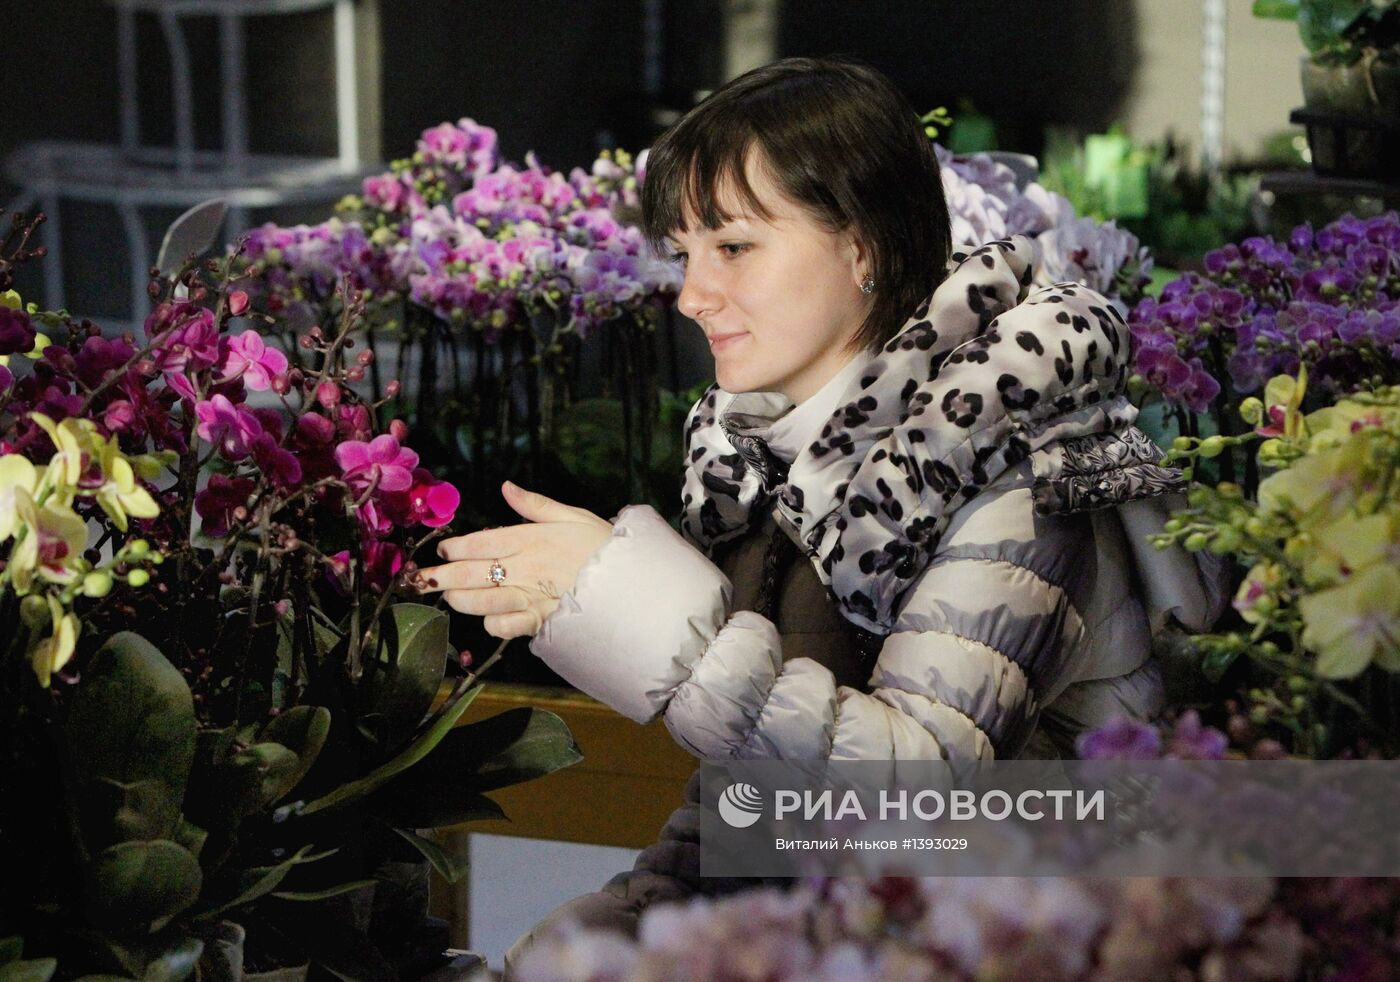 "Цветочный центр" во Владивостоке